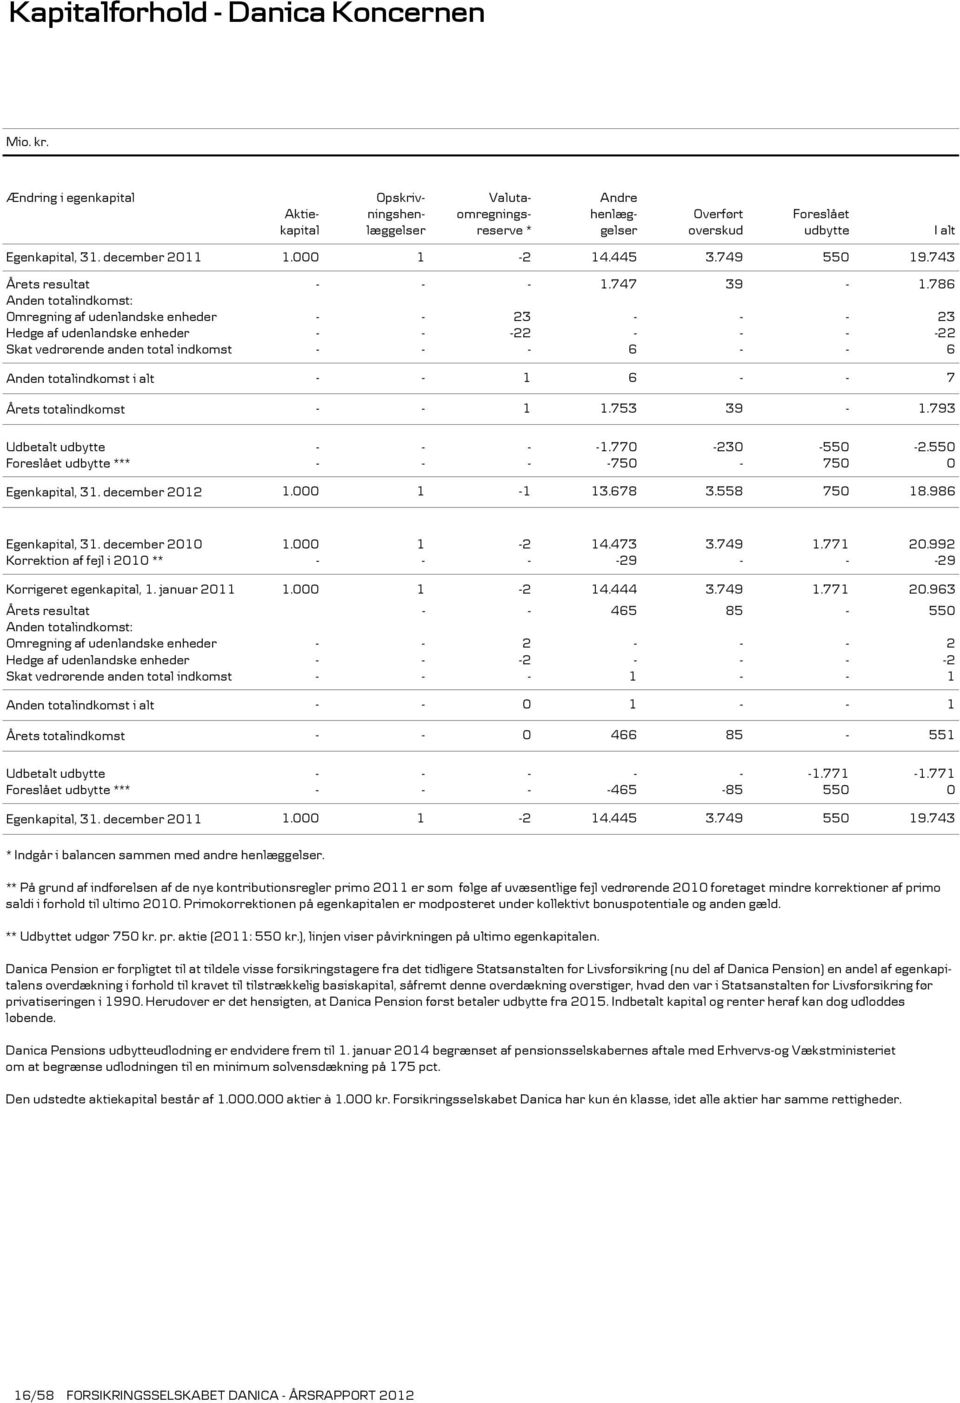 Aktie- ningshen- omregnings- henlæg- Overført Foreslået kapital læggelser reserve * gelser overskud udbytte 1.000 1-2 14.445 3.749 550 19.743 - - - 1.747 39-1.